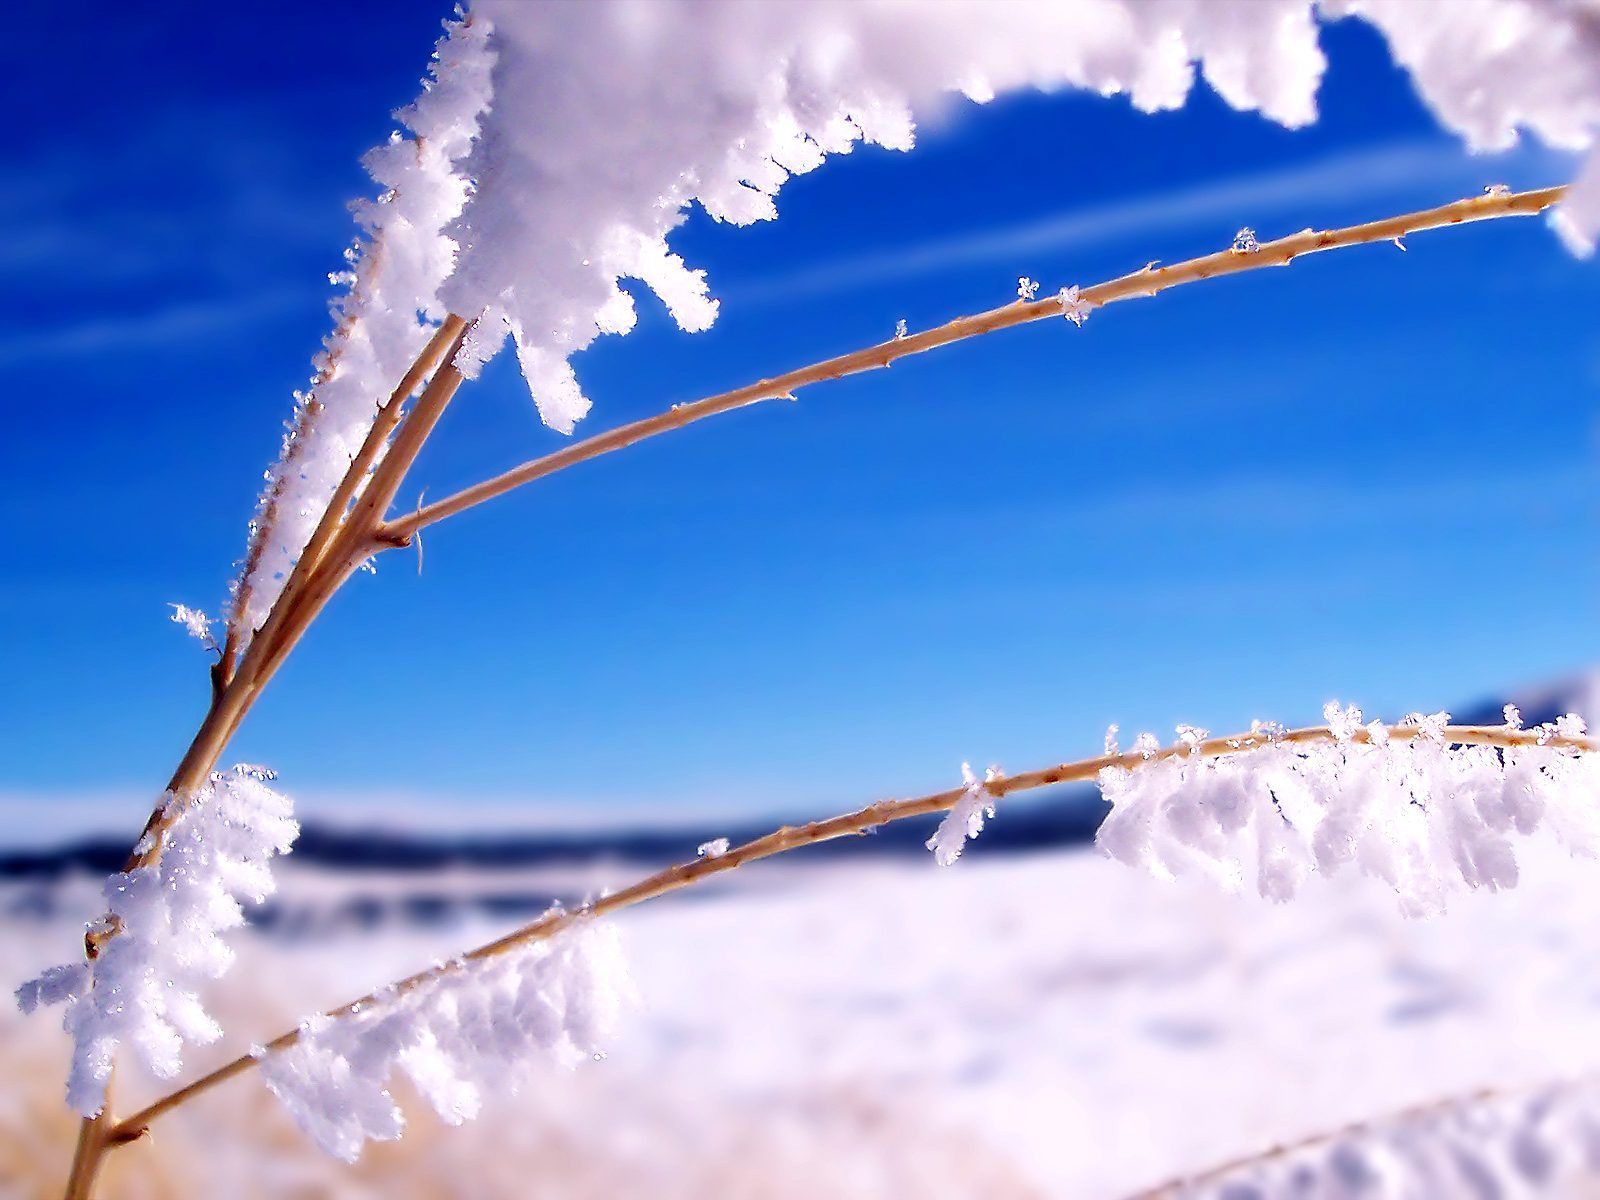 Winter Scenes Backgrounds